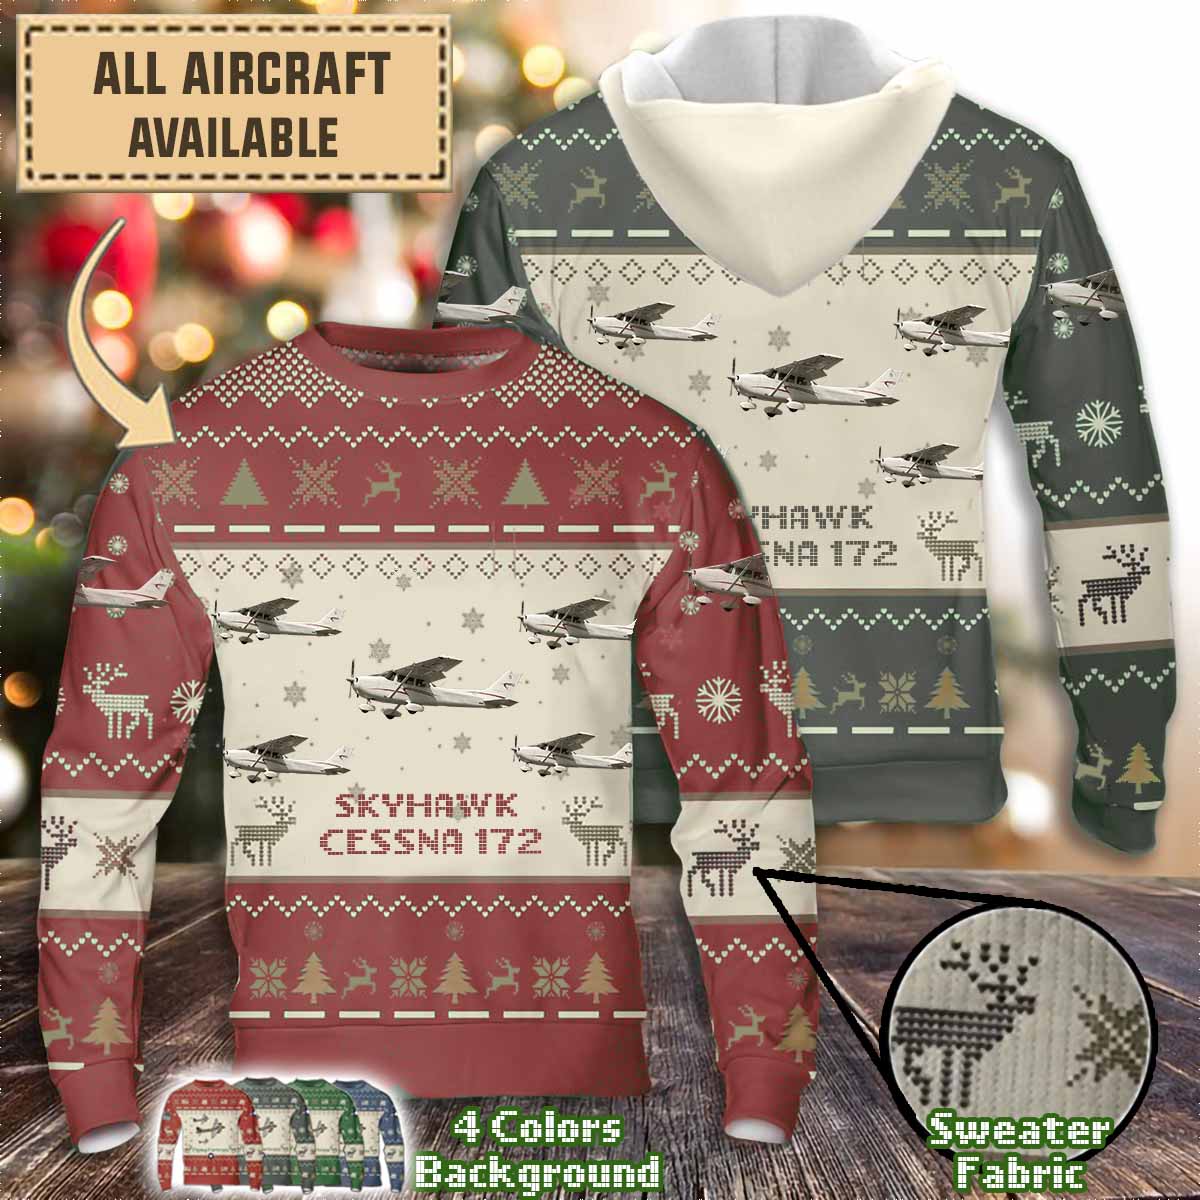 cessna 172 skyhawk aircraft sweater 8g5np